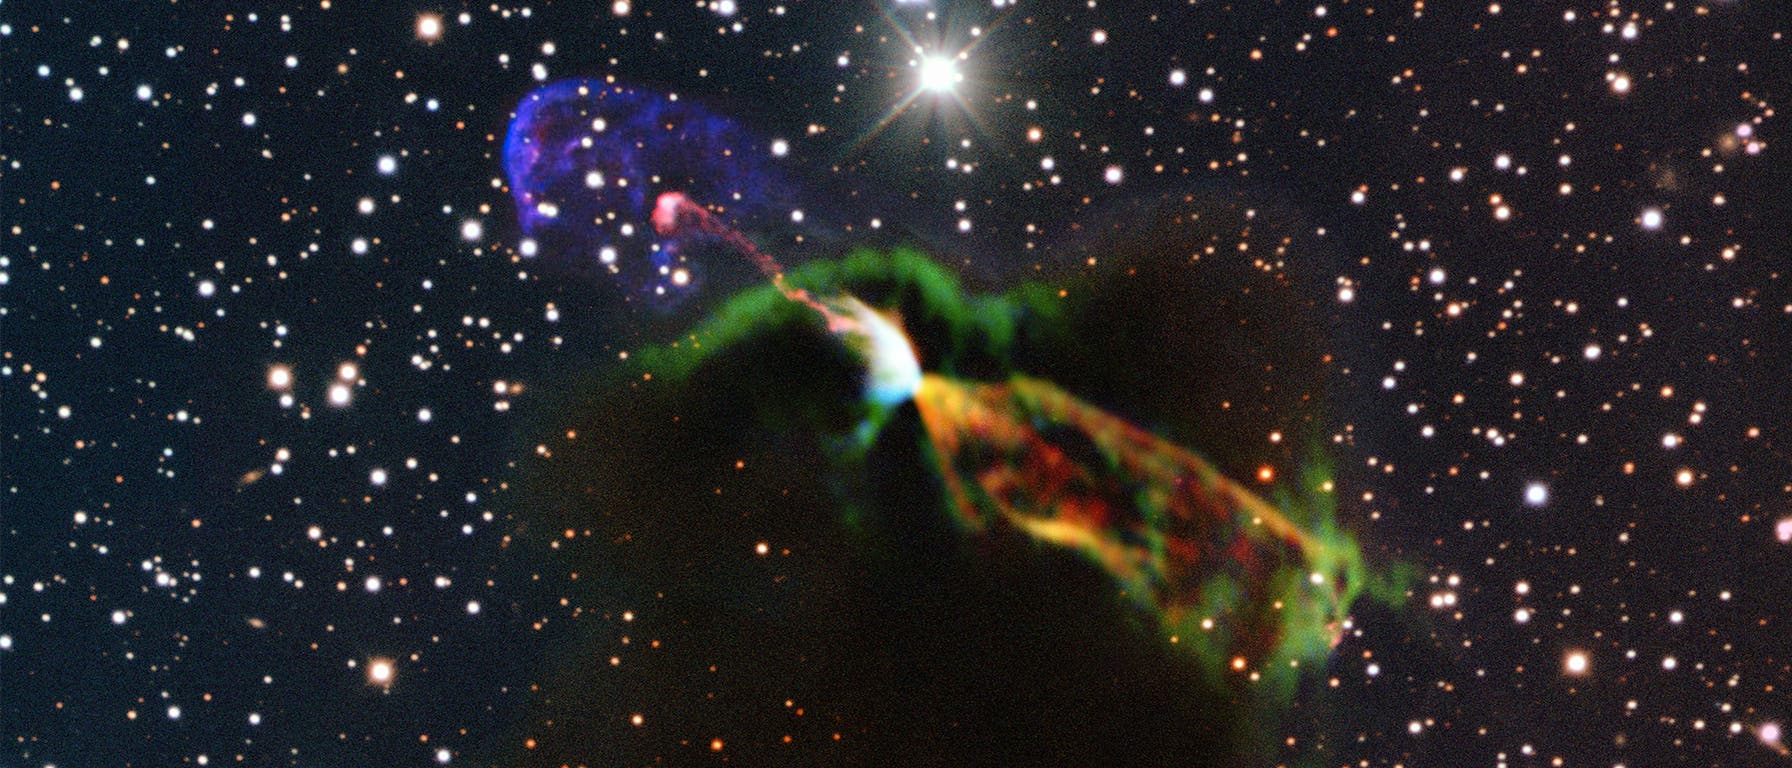 Das Herbig-Haro-Objekt HH 46/47 im Sternbild Segel (Komposit aus otischem und Submillimeterwelleb-Bildern)